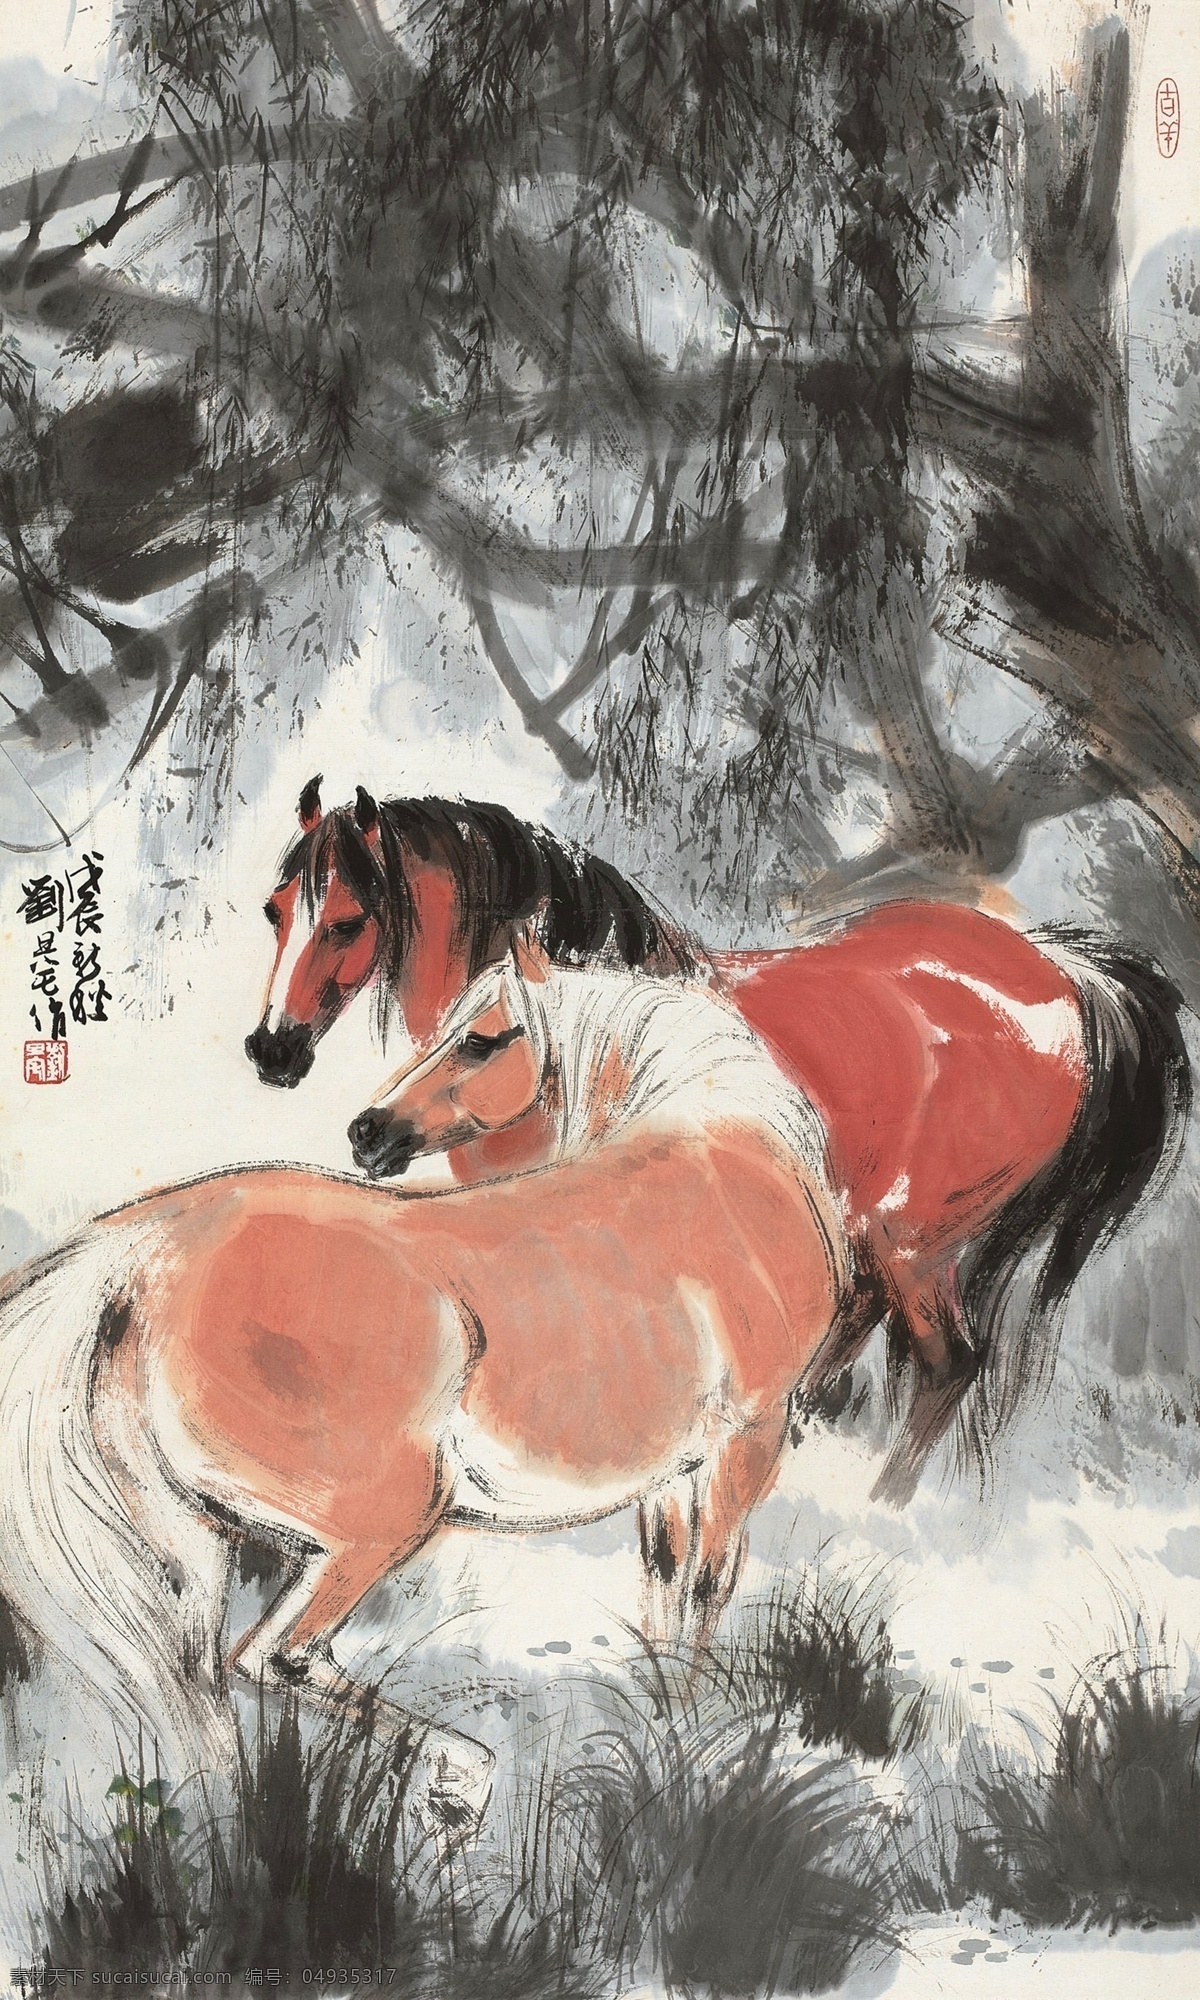 刘旦宅 国画图片 国画 中国画 传统画 名家 绘画 文化艺术 绘画书法 水墨